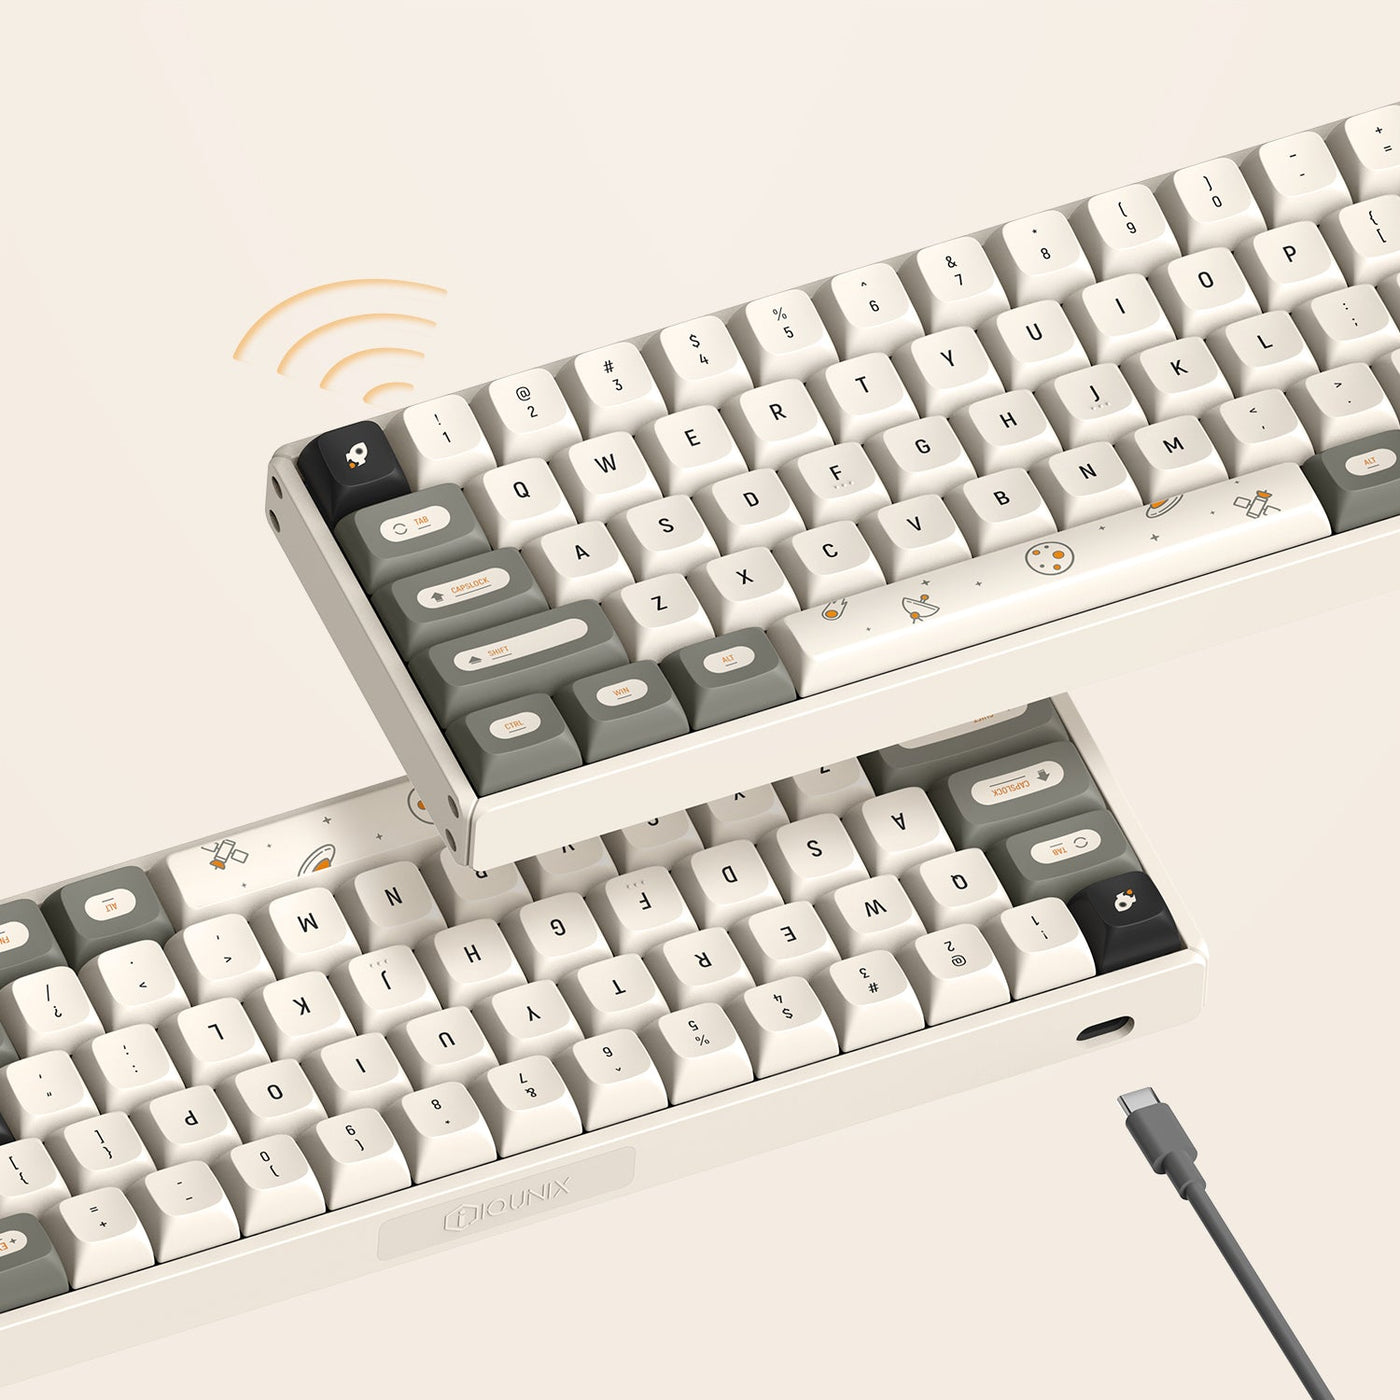 IQUNIX F65 Hitchhiker Wireless Mechanical Keyboard